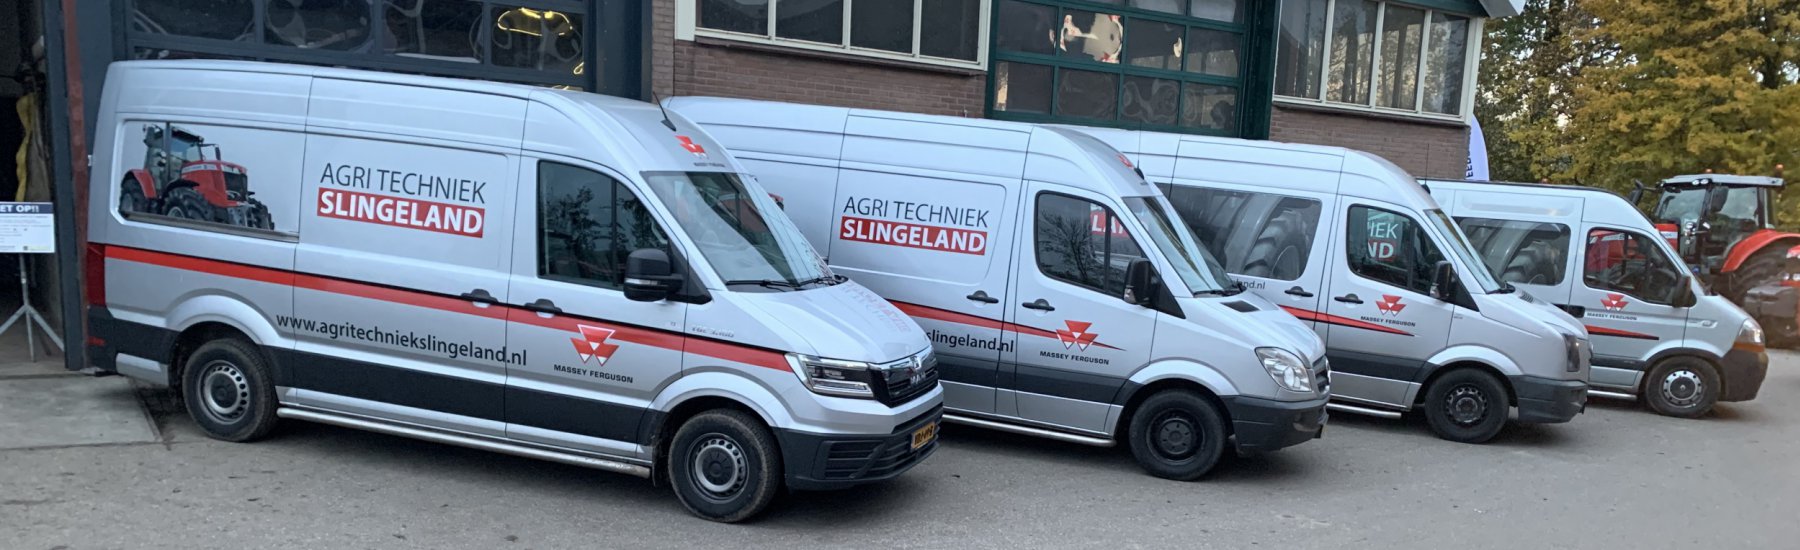 Strautmann Super Vitesse opraapwagen afgeleverd aan een klant uit de regio